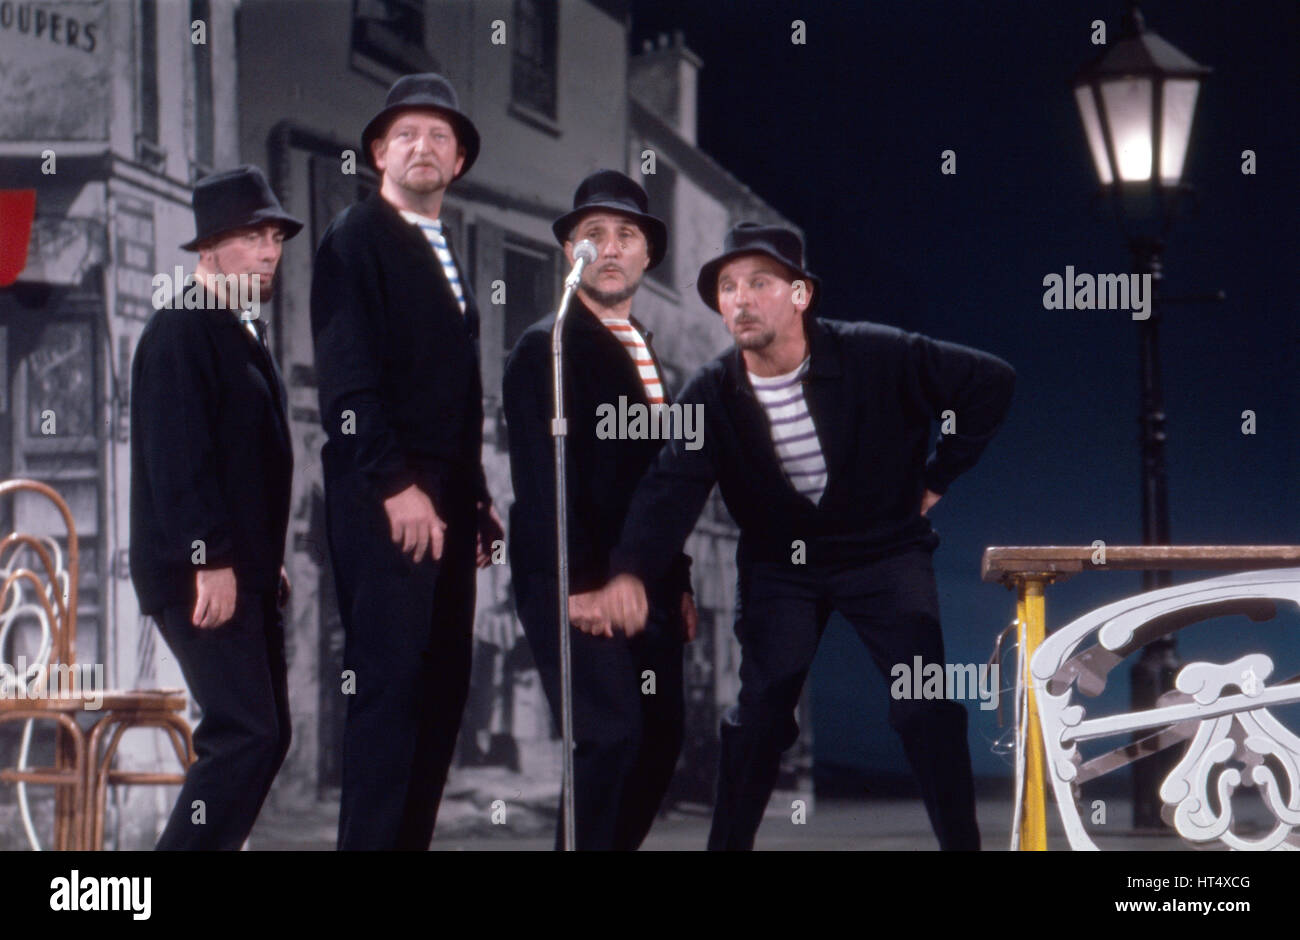 Das französische Vokalquartett "Le Quatre Barbus", Deutschland 1960er Jahre. French vocal quartet "Le Quatre Barbus", Germany 1960s. Stock Photo